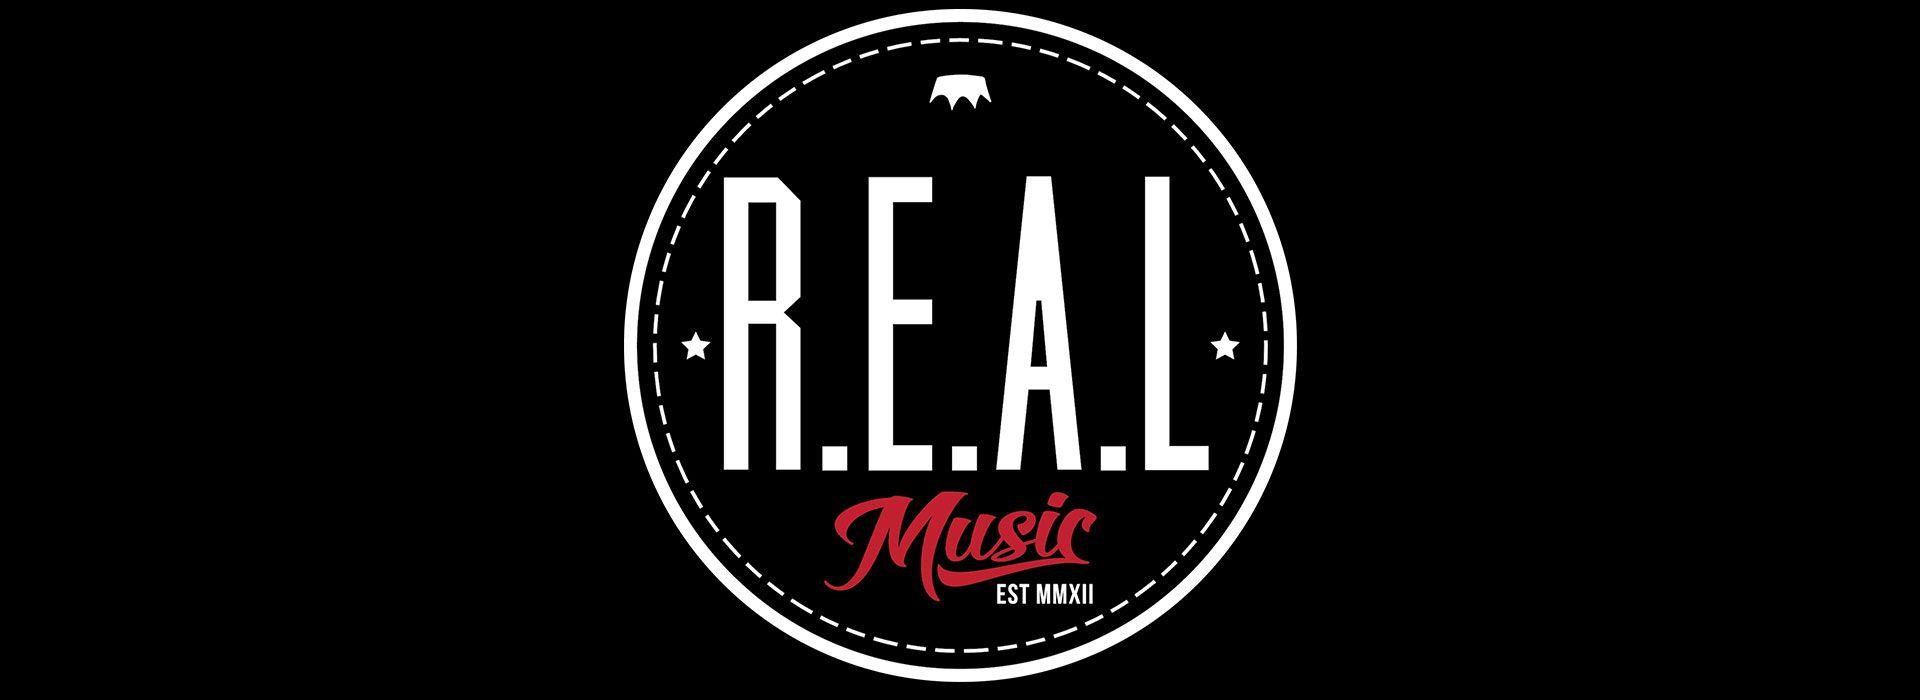 R.E.A.L Music